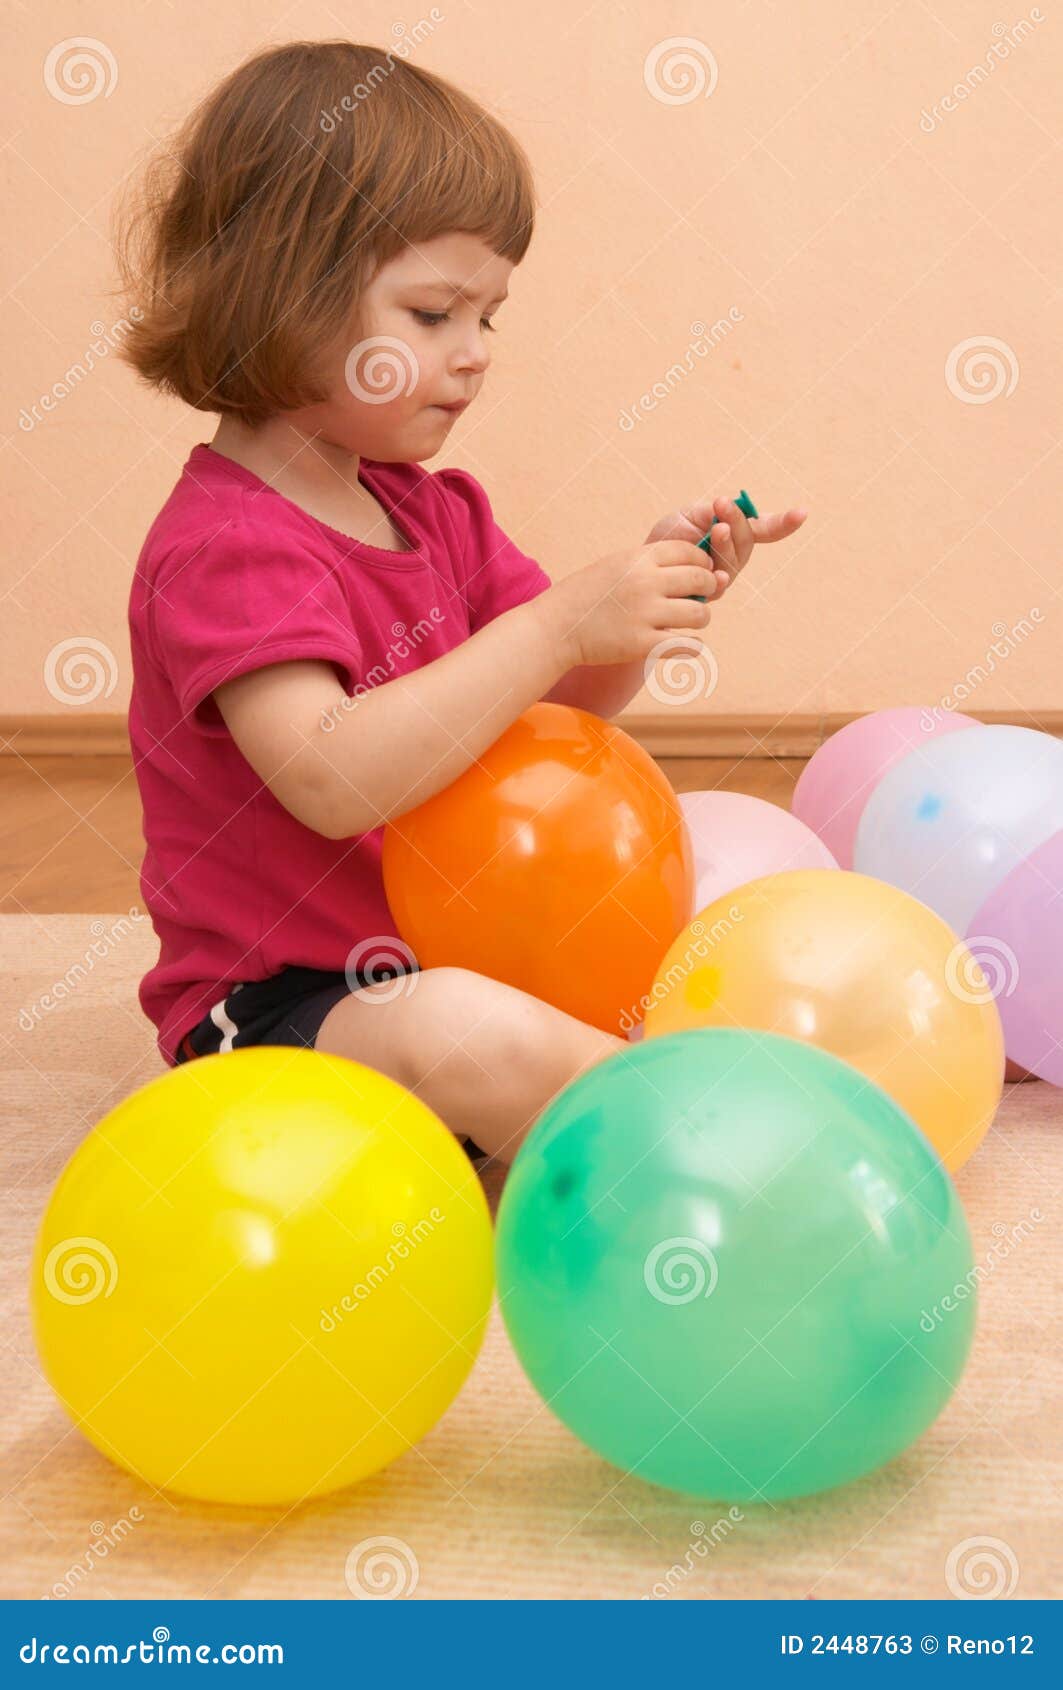 Включи шар аут. Игры с воздушными шариками. Игры с воздушными шариками для малышей. Игры с воздушными шарами в детском саду. Интересные игры для детей с воздушными шариками.